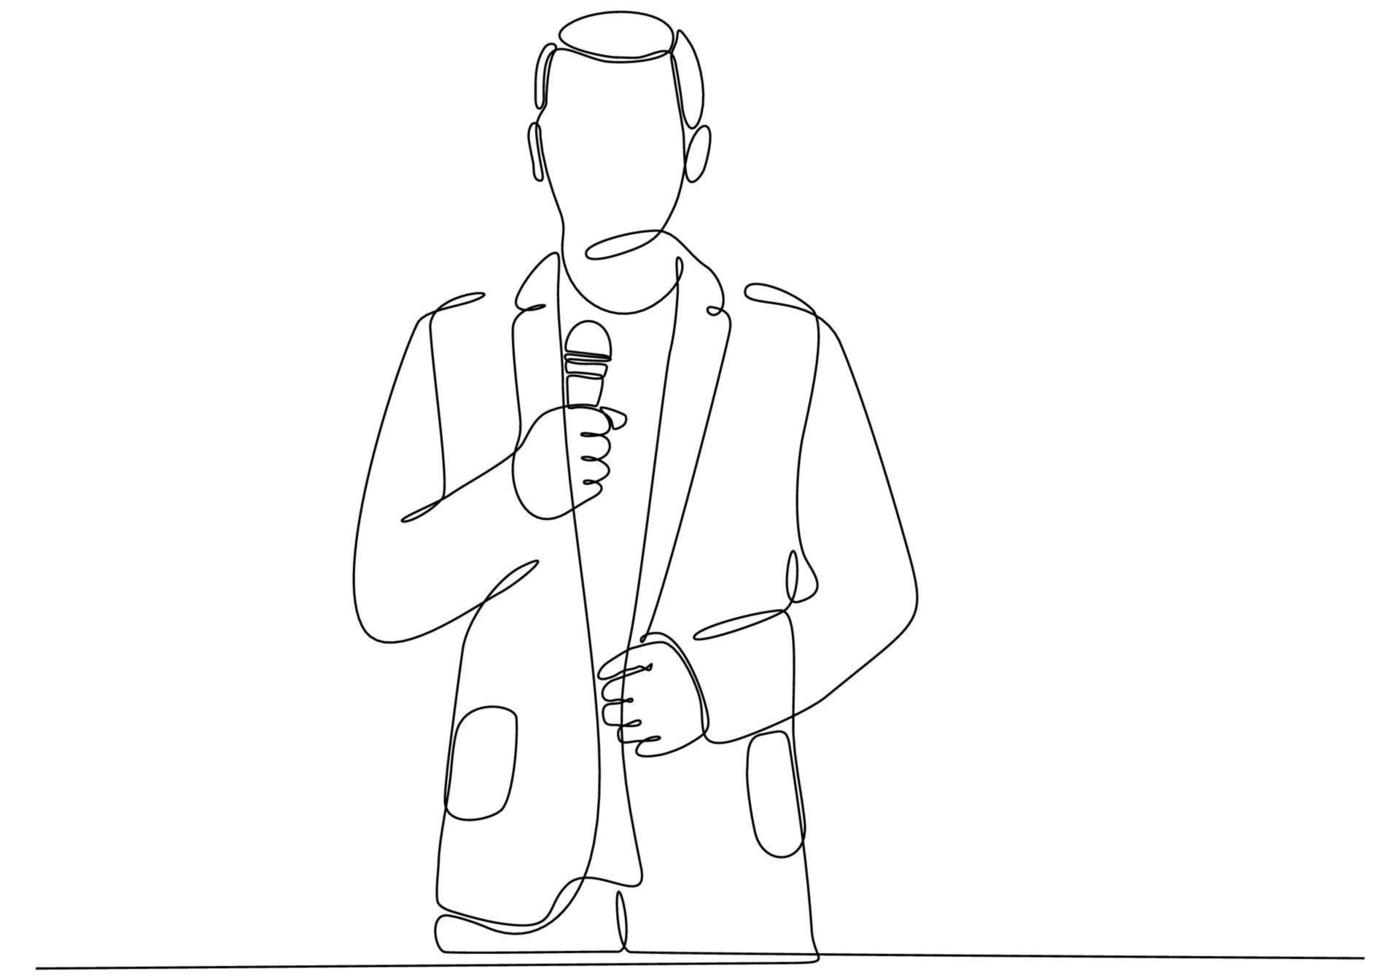 disegno a linea continua dell'uomo che tiene il microfono, illustrazione vettoriale del simbolo del giornalista